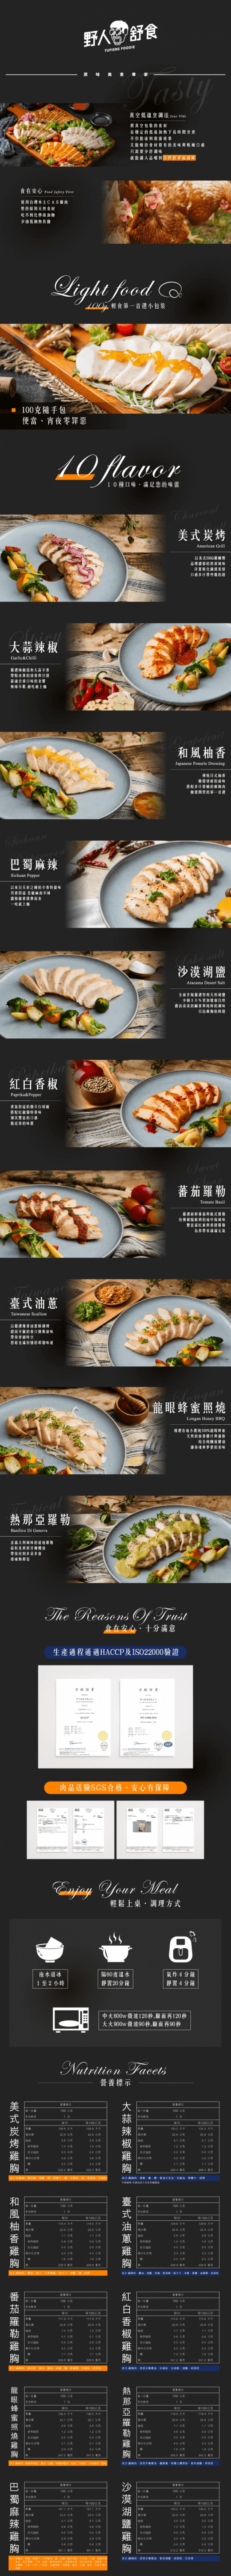 【野人舒食】舒肥嫩雞胸180G 國產雞肉 台灣雞肉 雞胸肉 健身輕食 高蛋白